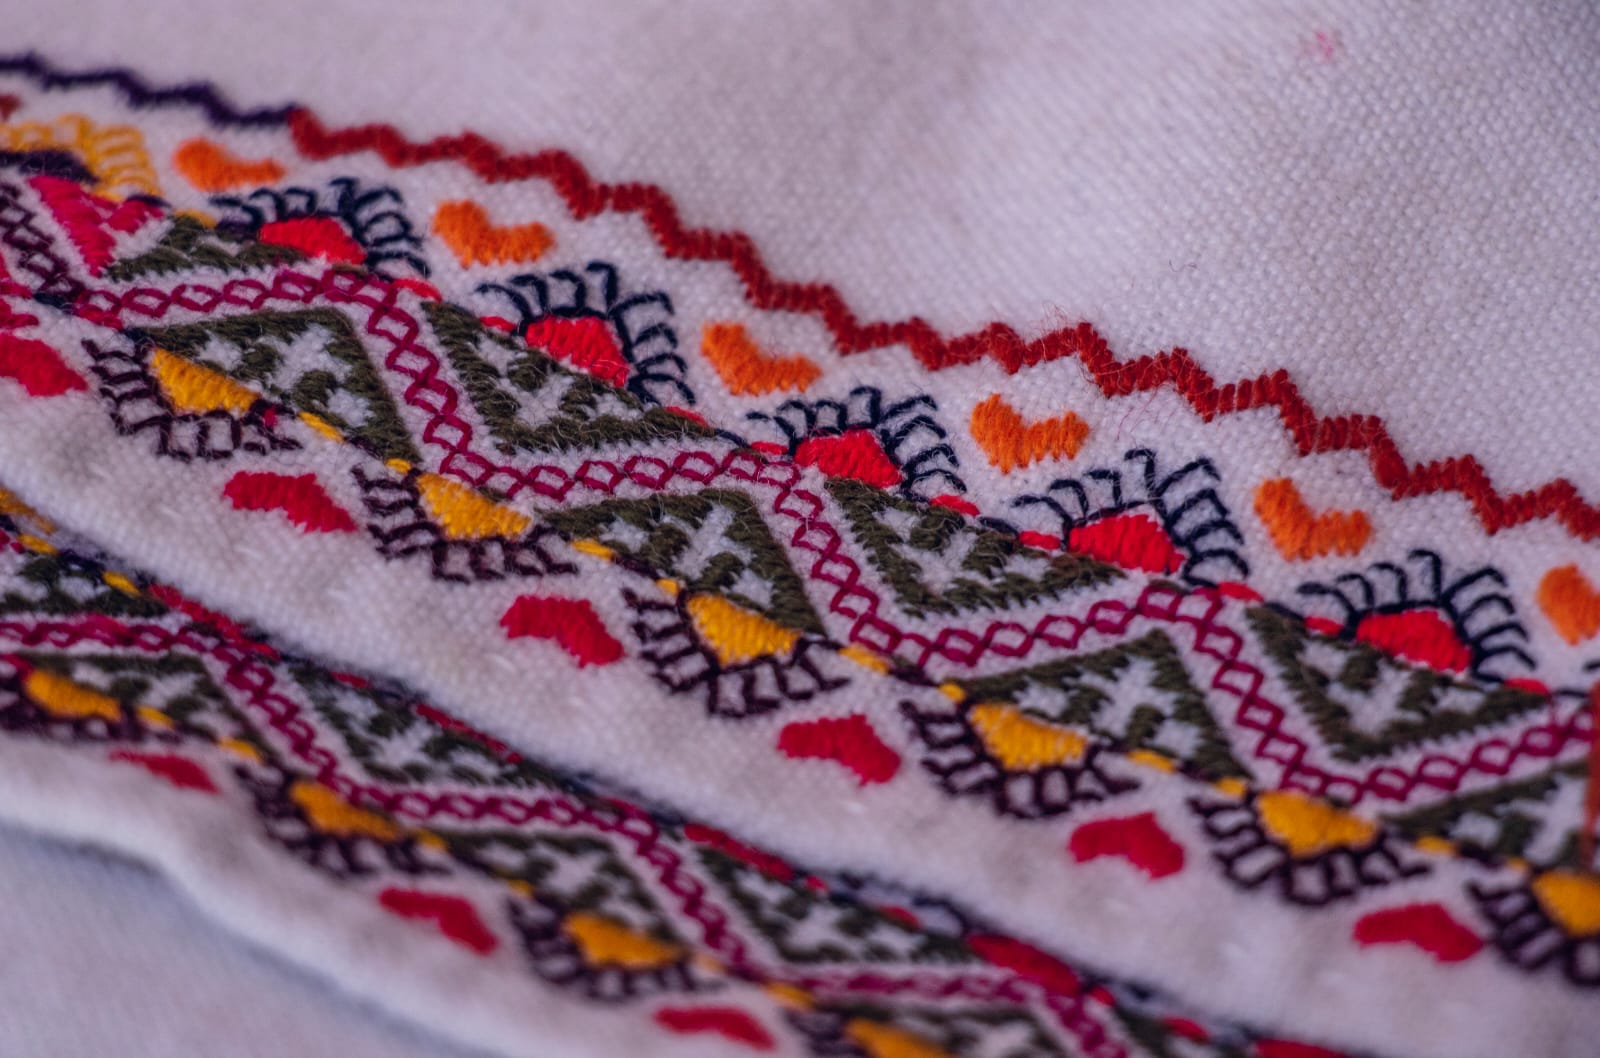 Los bordados hechos a mano destacan en las prendas que se utilizan en este día.